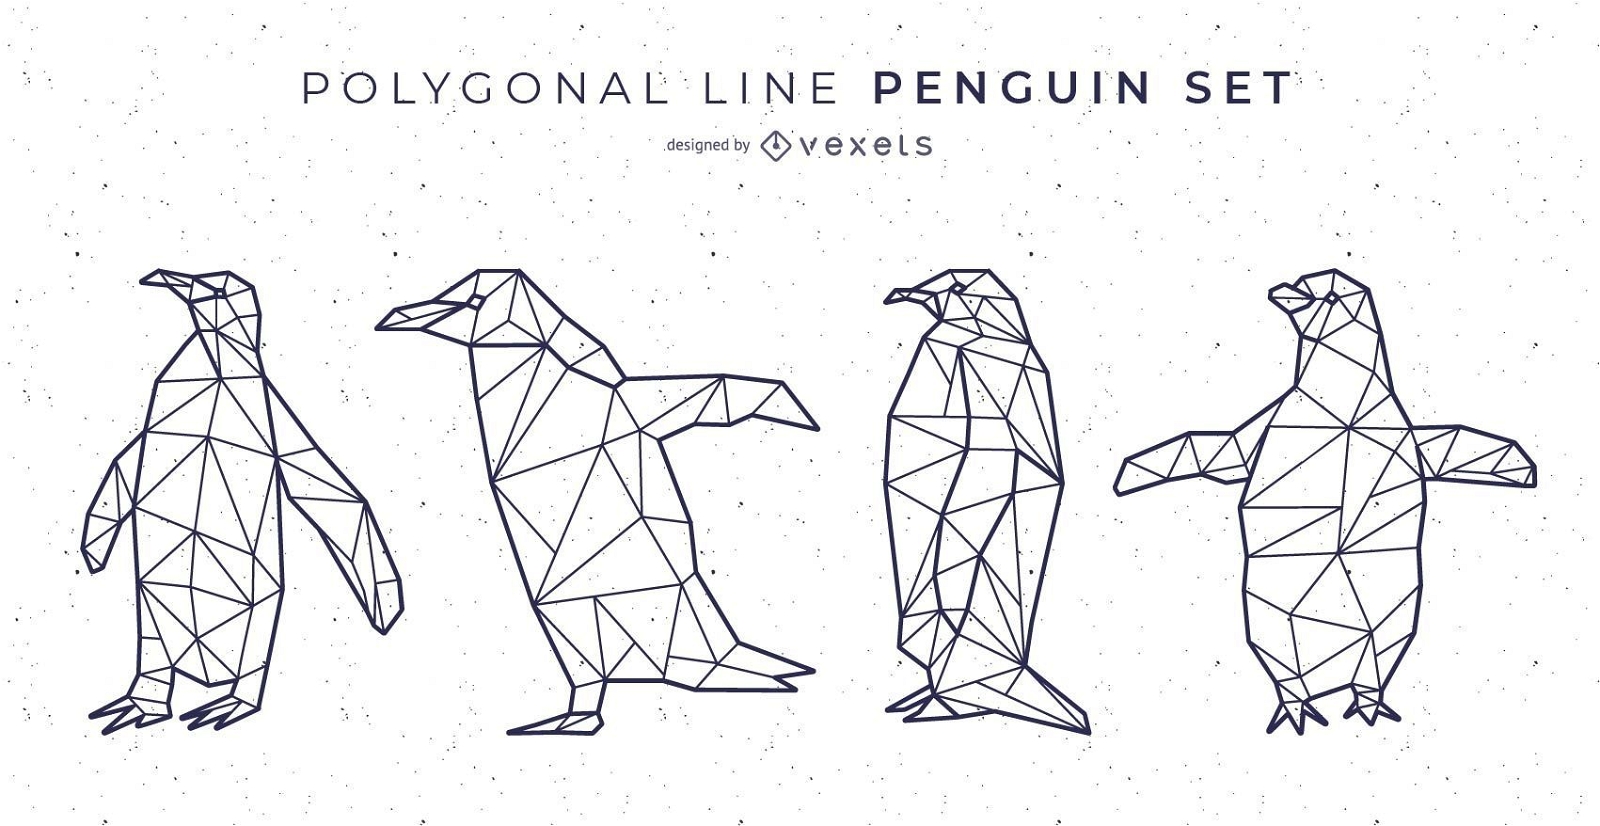 Conjunto de vetores de pinguins de linha poligonal